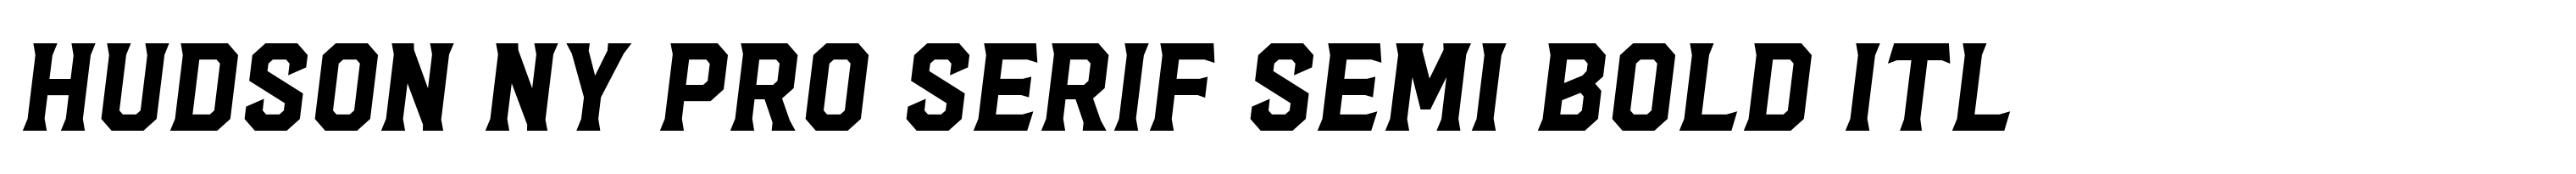 Hudson NY Pro Serif Semi Bold Itl